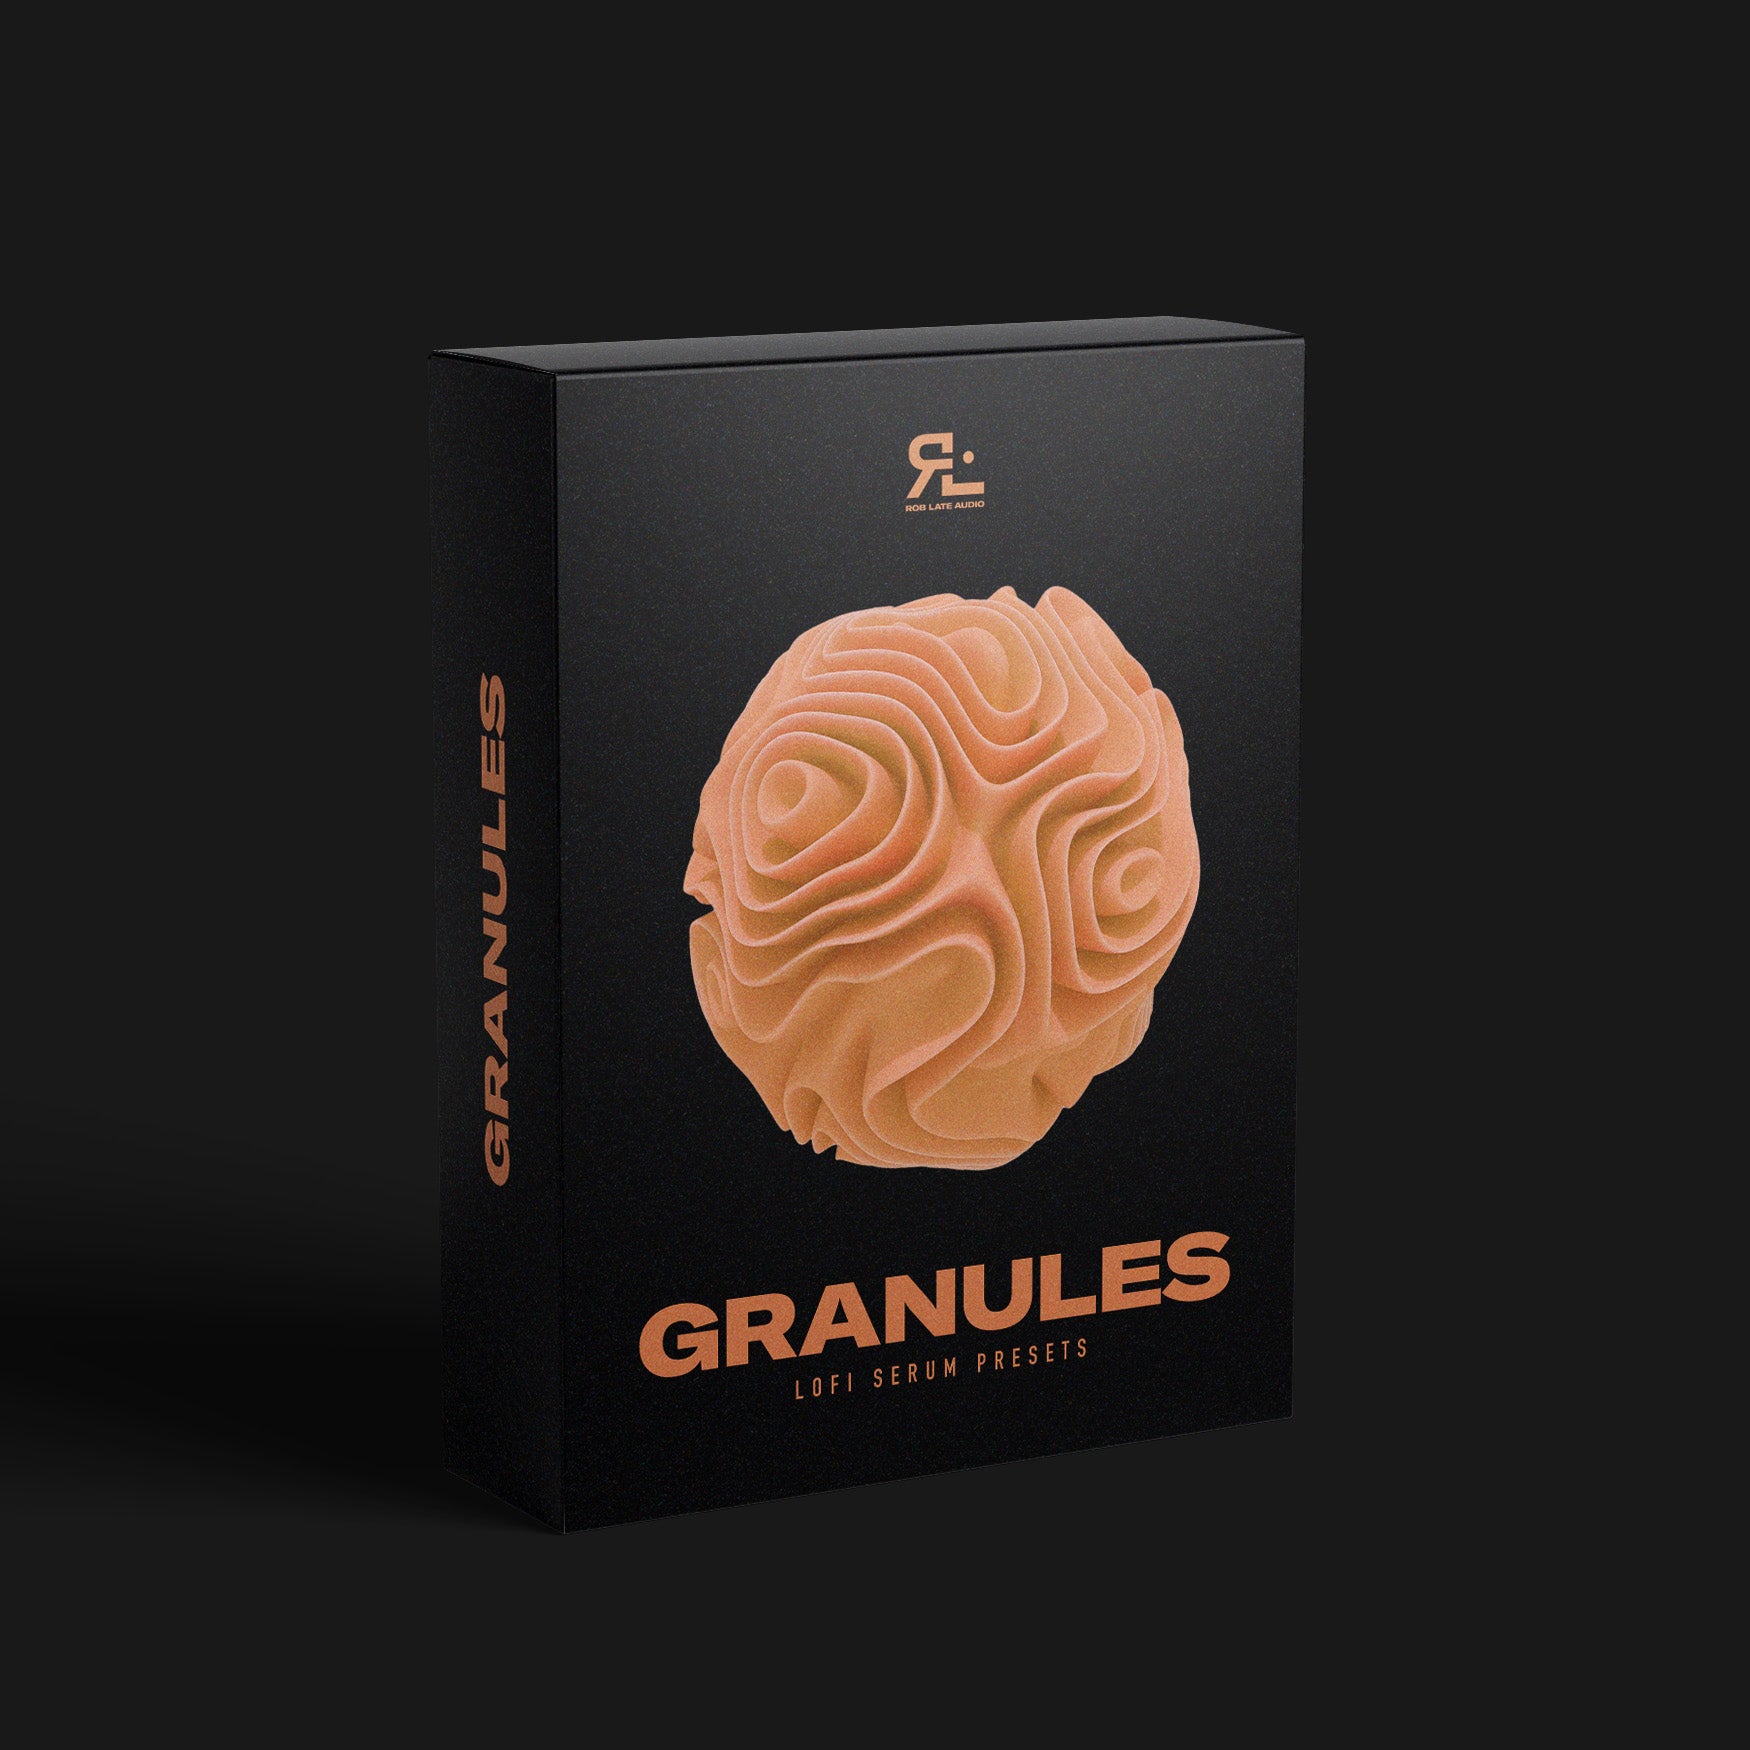 Granules - Lofi Serum Presets